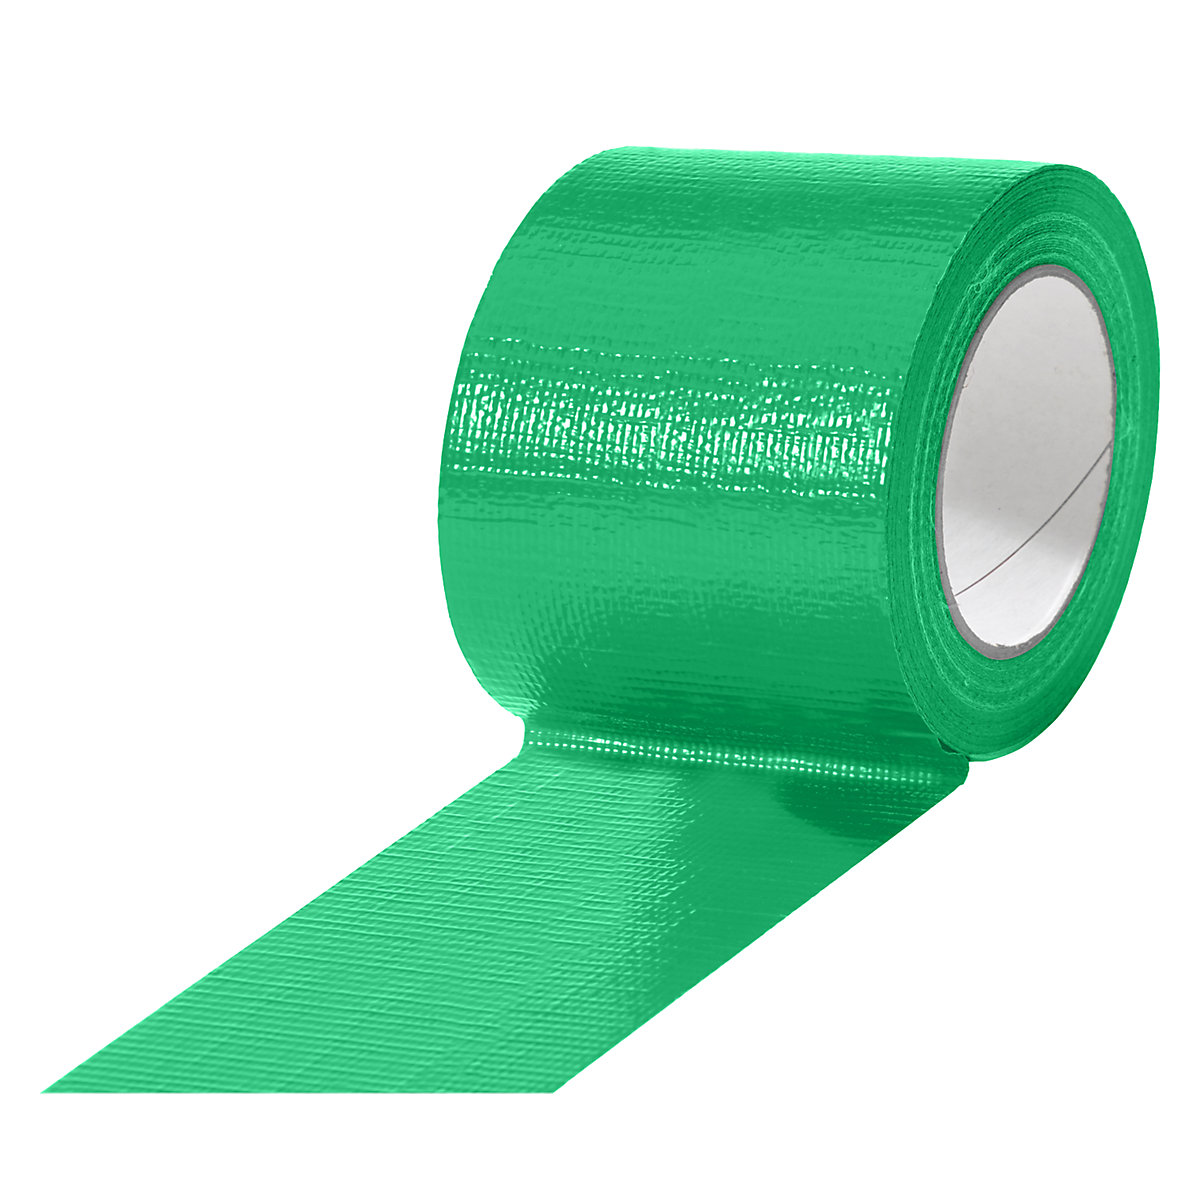 Traka od tkanine, u različitim bojama, pak. 12 rola, u zelenoj boji, širina trake 75 mm